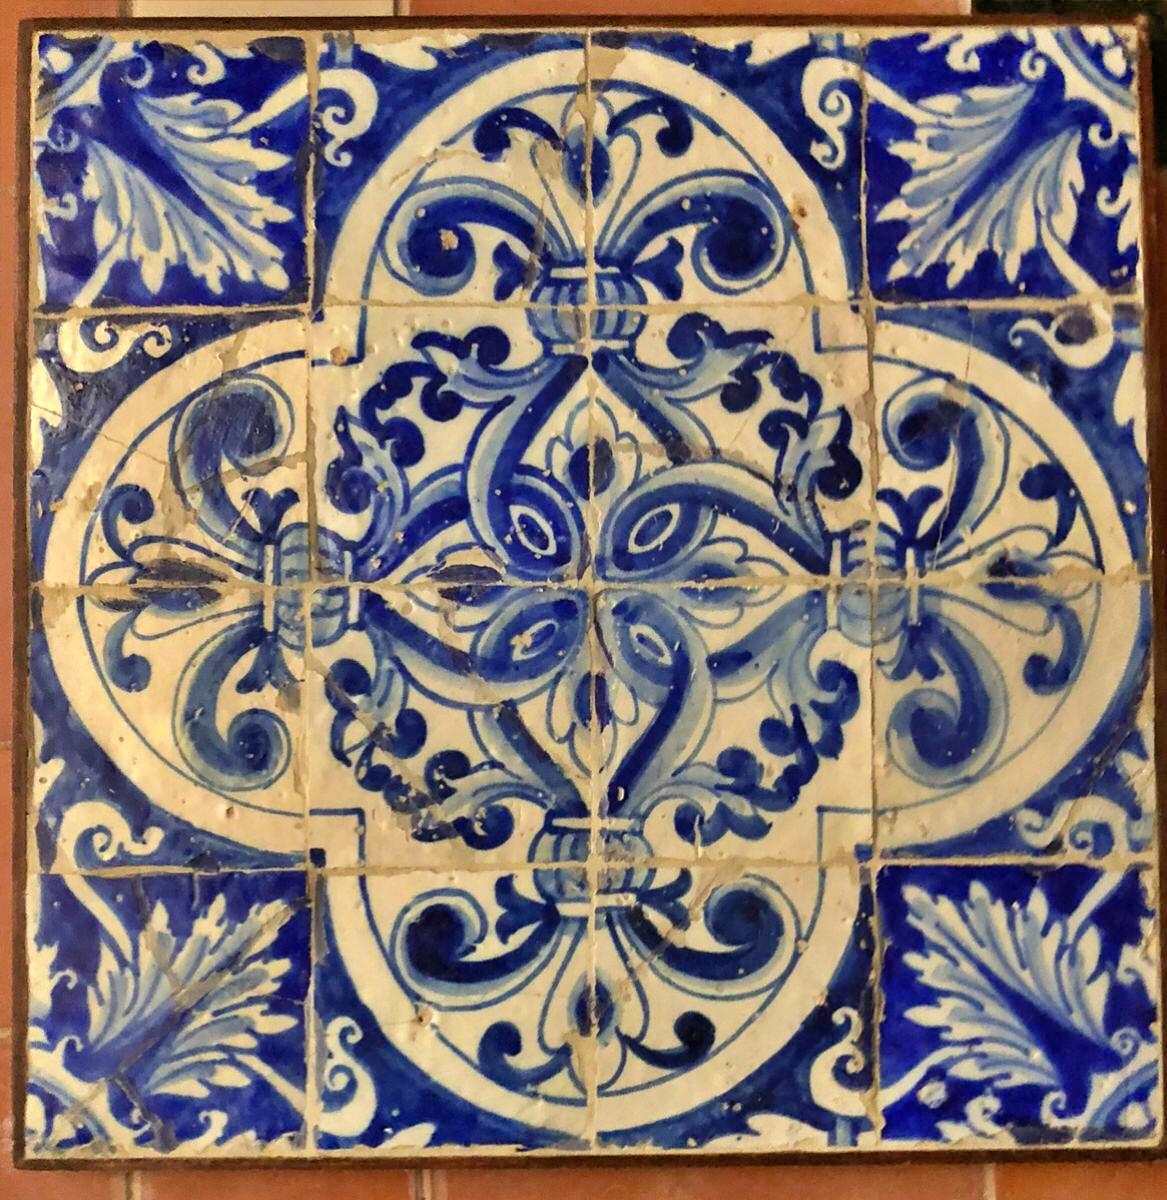 Portugiesische Kacheltafel aus dem 17. Jahrhundert.
Wiederhergestellt
56cm x 56cm
14cm x 14cm Fliesen

17. Jahrhundert

Kurze Zeit später wurden diese einfarbigen weißen Kacheln durch mehrfarbige Kacheln (enxaquetado rico) ersetzt, die oft